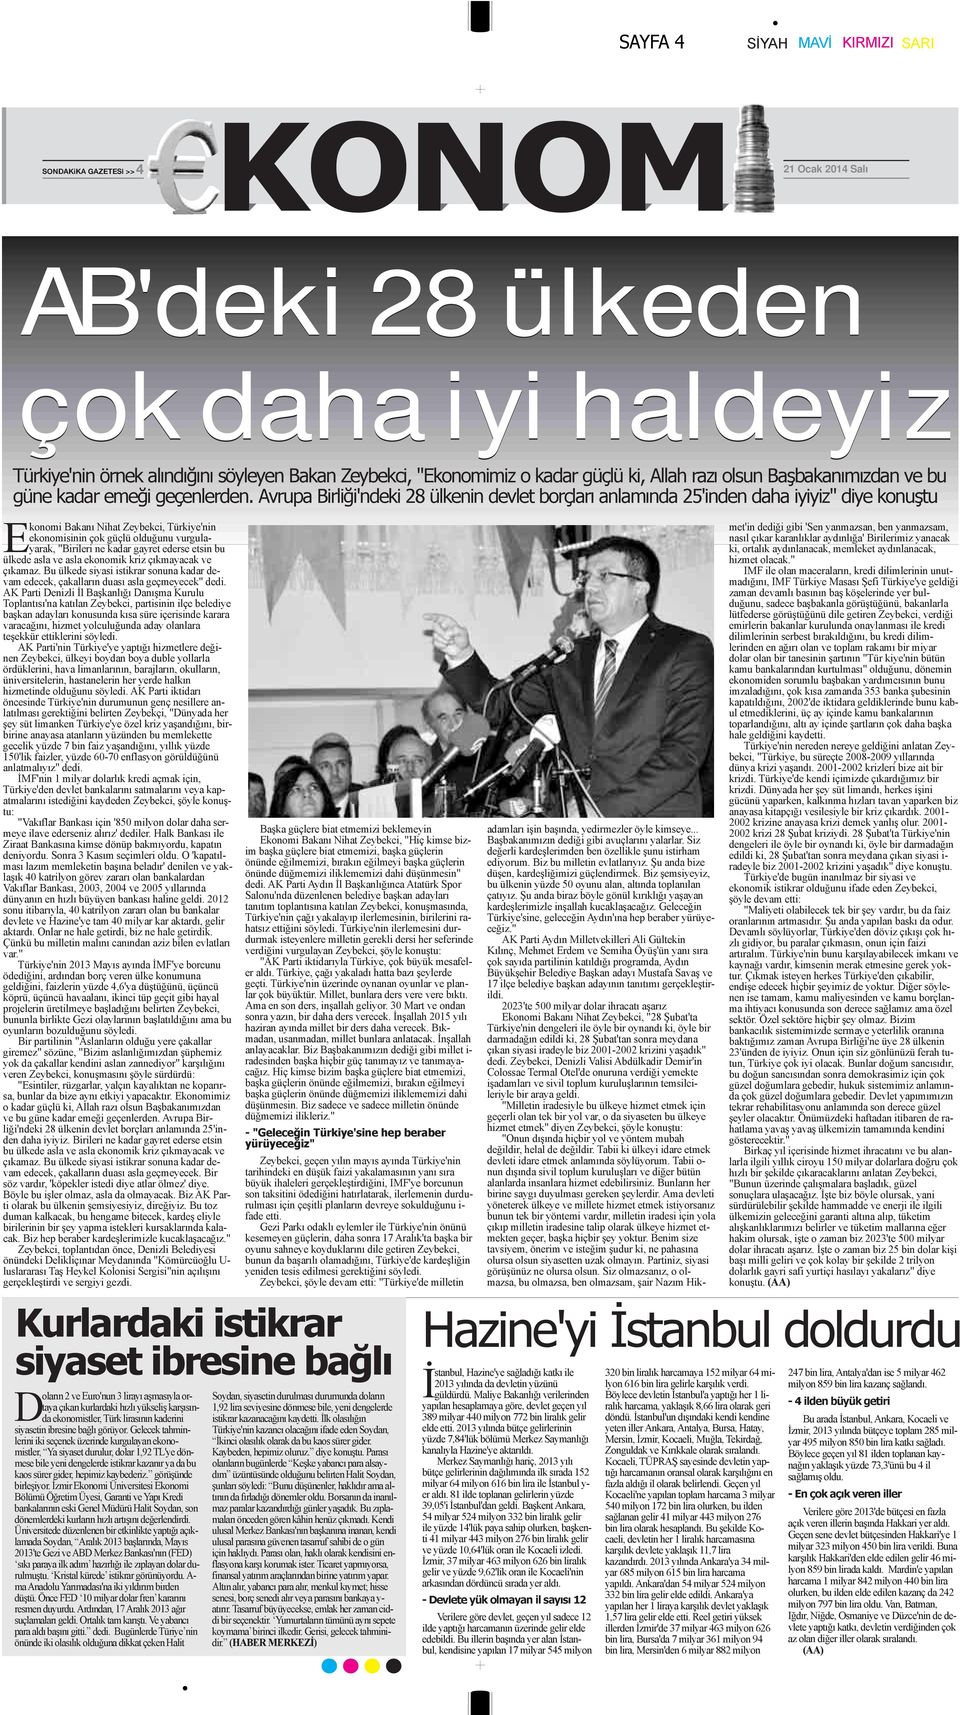 Avrupa Birliği'ndeki 28 ülkenin devlet borçları anlamında 25'inden daha iyiyiz" diye konuştu Ekonomi Bakanı Nihat Zeybekci, Türkiye'nin ekonomisinin çok güçlü olduğunu vurgulayarak, "Birileri ne